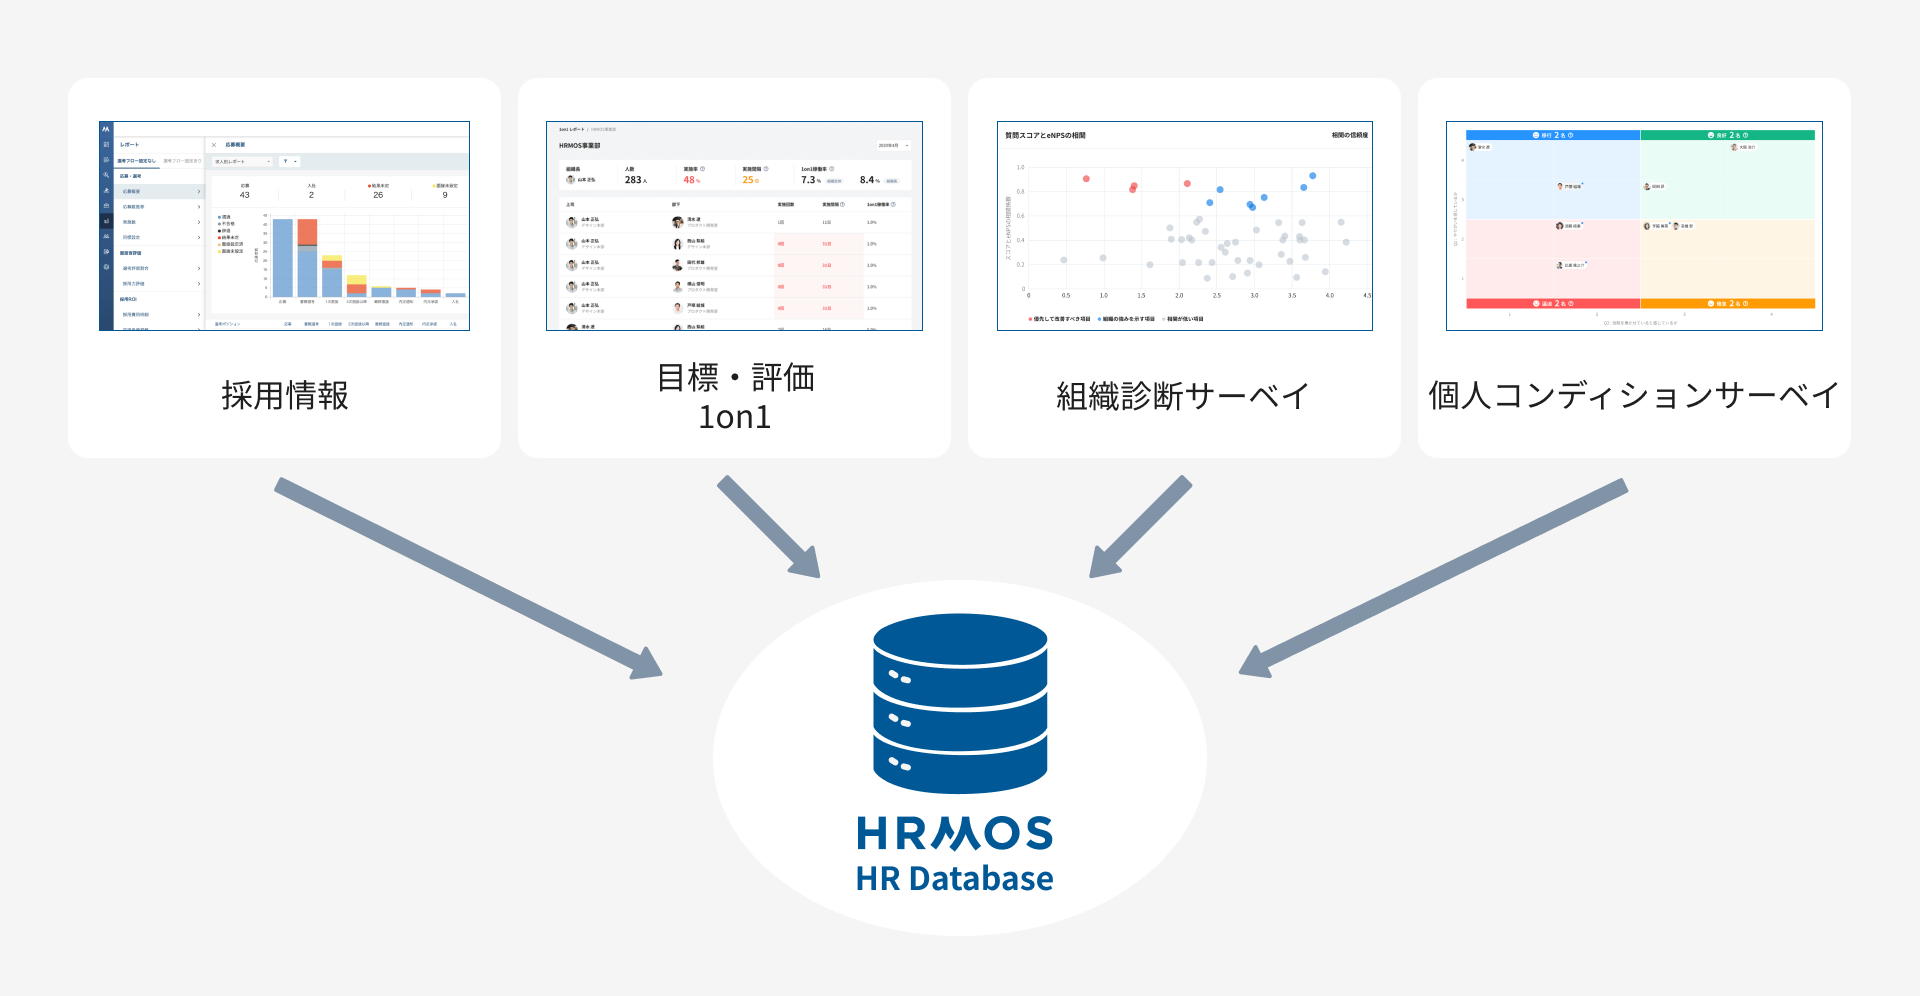 HRMOSは「採用情報」「目標・評価1on1」「組織診断サーベイ」「個人コンディションサーベイ」など様々なプロダクトがHR Databeseとしてまとめあげられています。